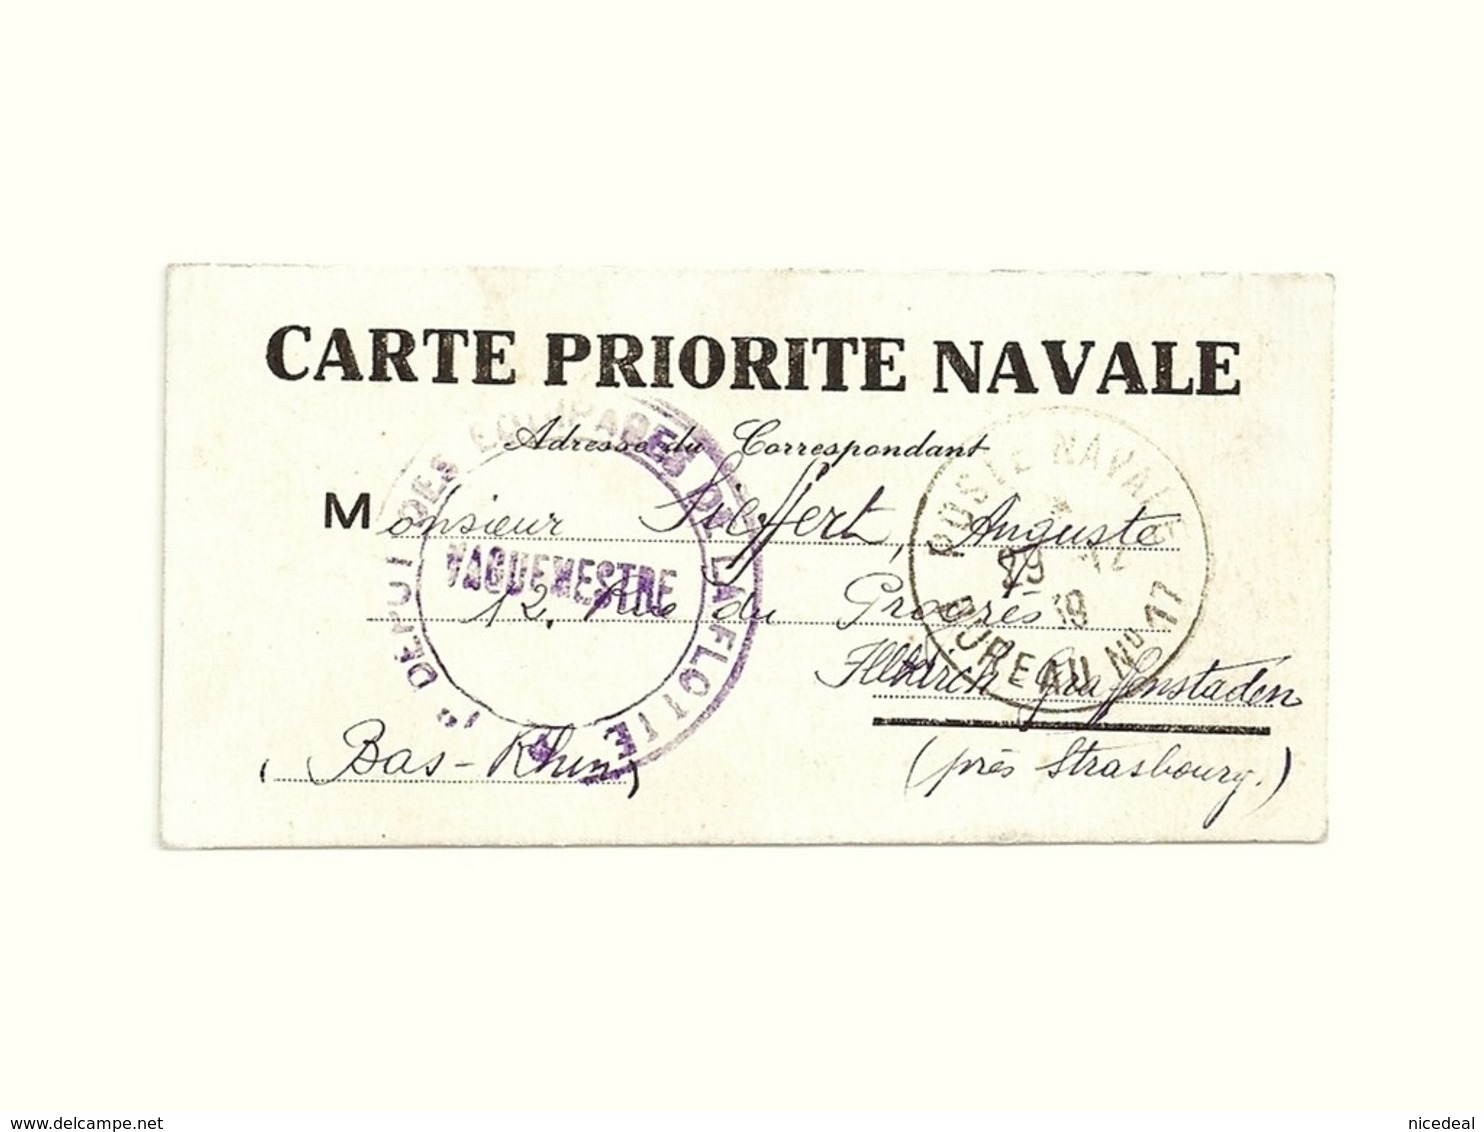 CARTE PRIORITE NAVALE Poste Marine Franchise Militaire 1er Dépôt Des équipages De La Flotte Cherbourg Naval 1939 WW 2 II - 2. Weltkrieg 1939-1945